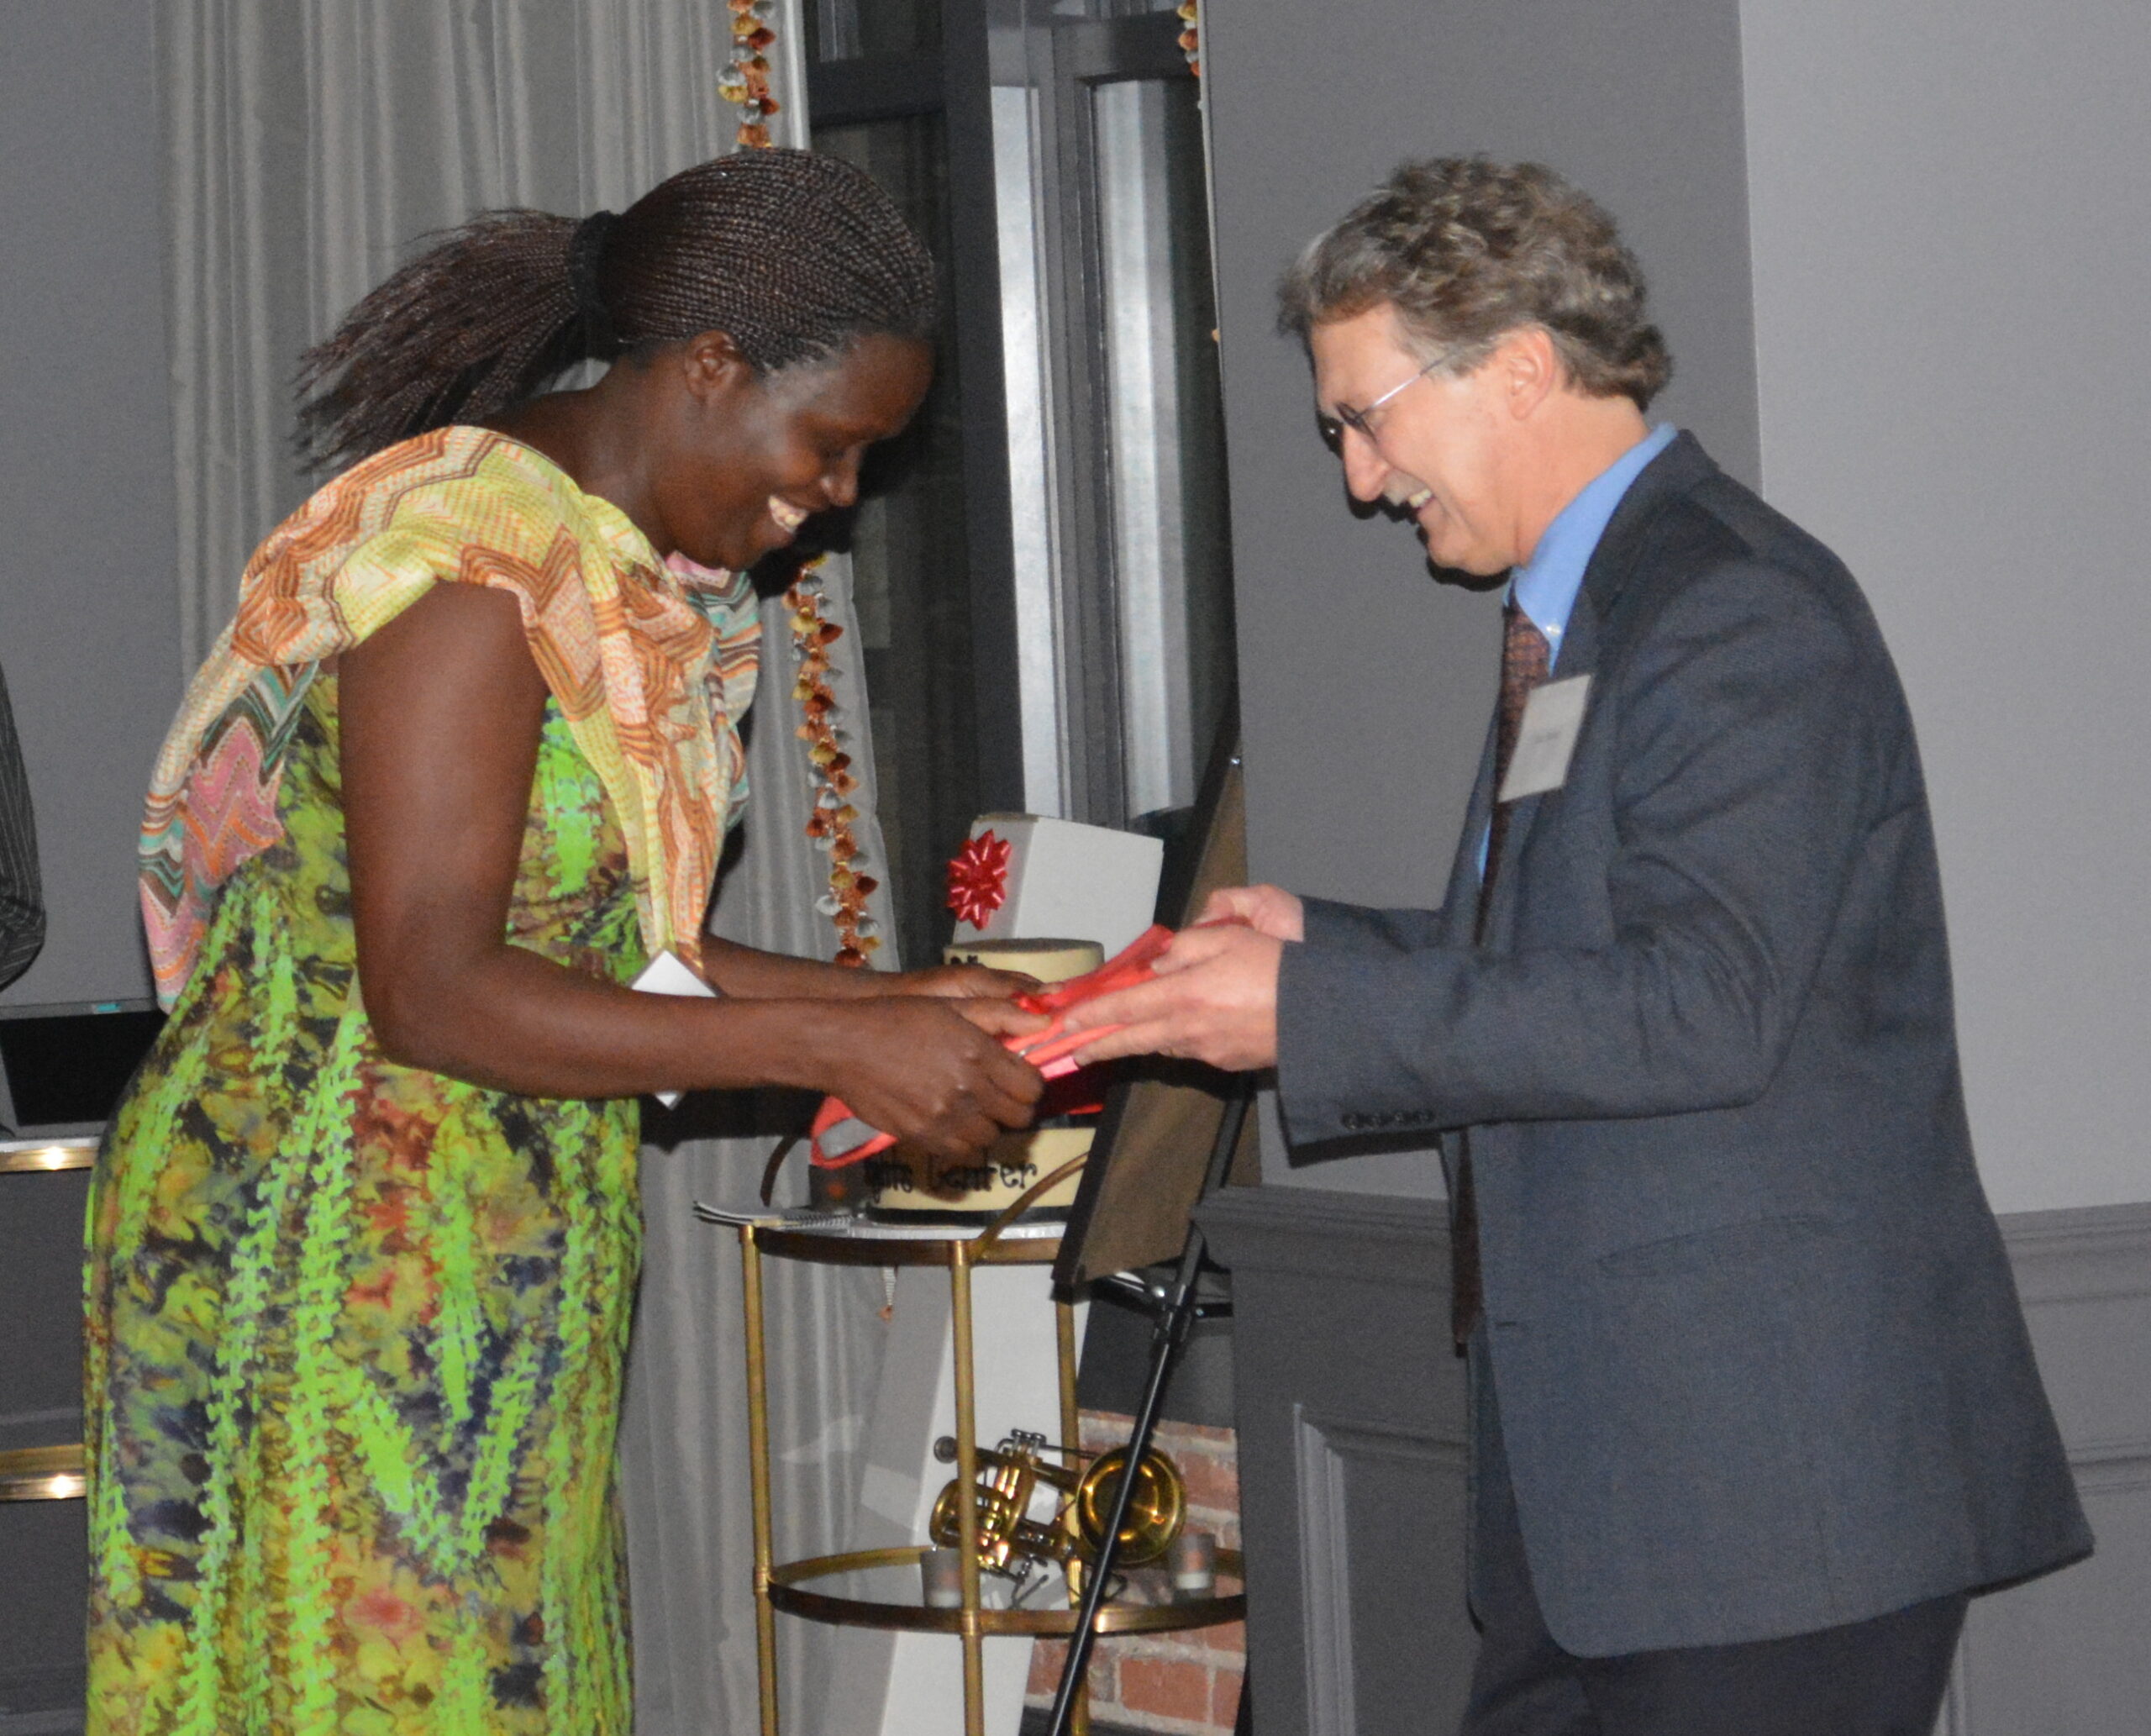 A woman receives an award from a man.